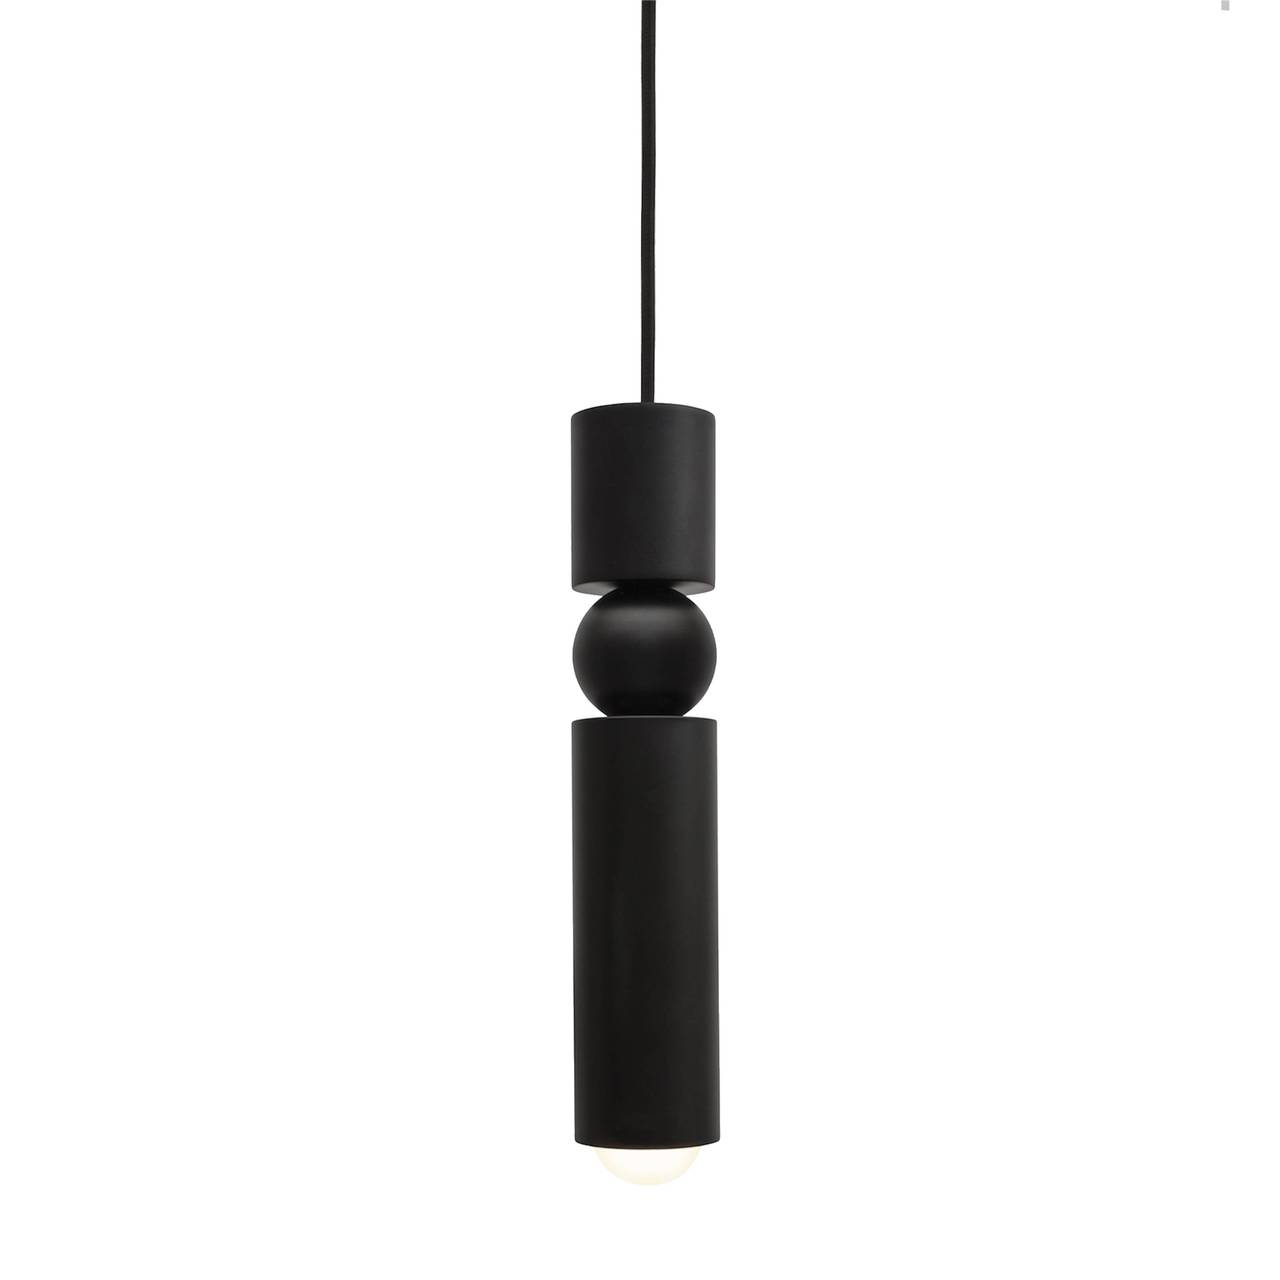 Lee Broom - Fulcrum light Hanglamp Top Merken Winkel